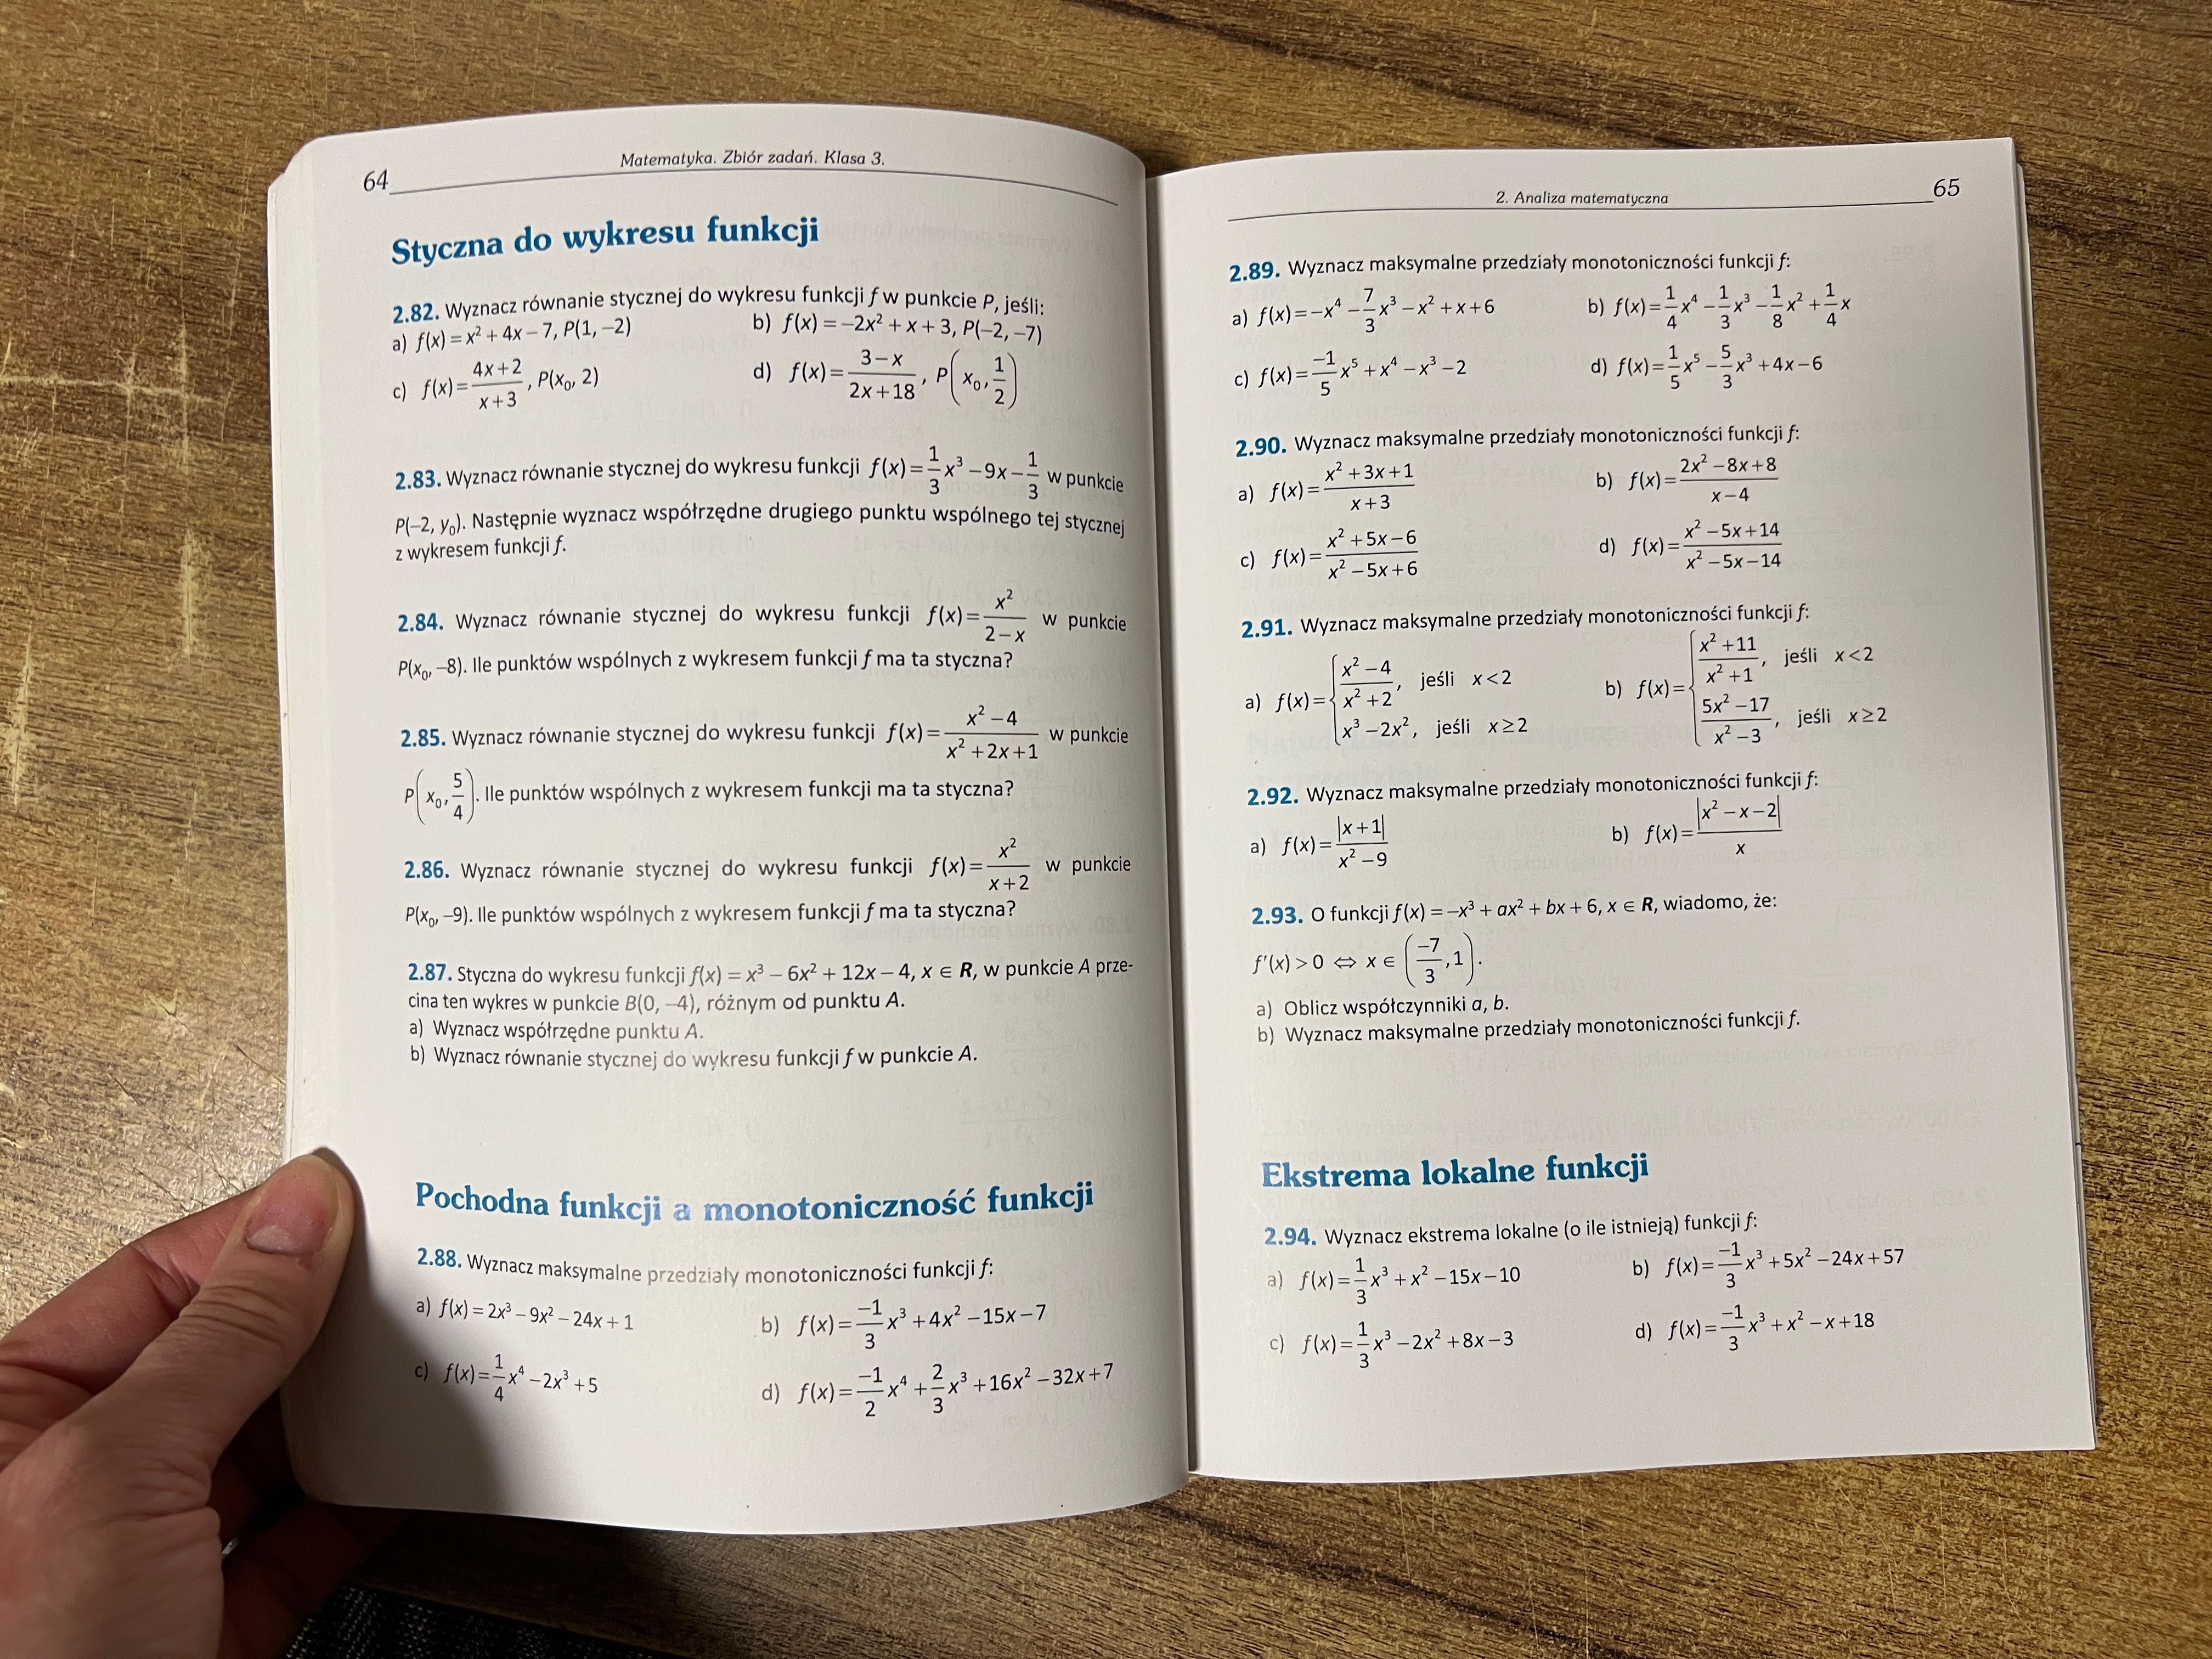 Matematyka podręcznik i zbiór zadań dla liceum i techników kl.3 kpl.